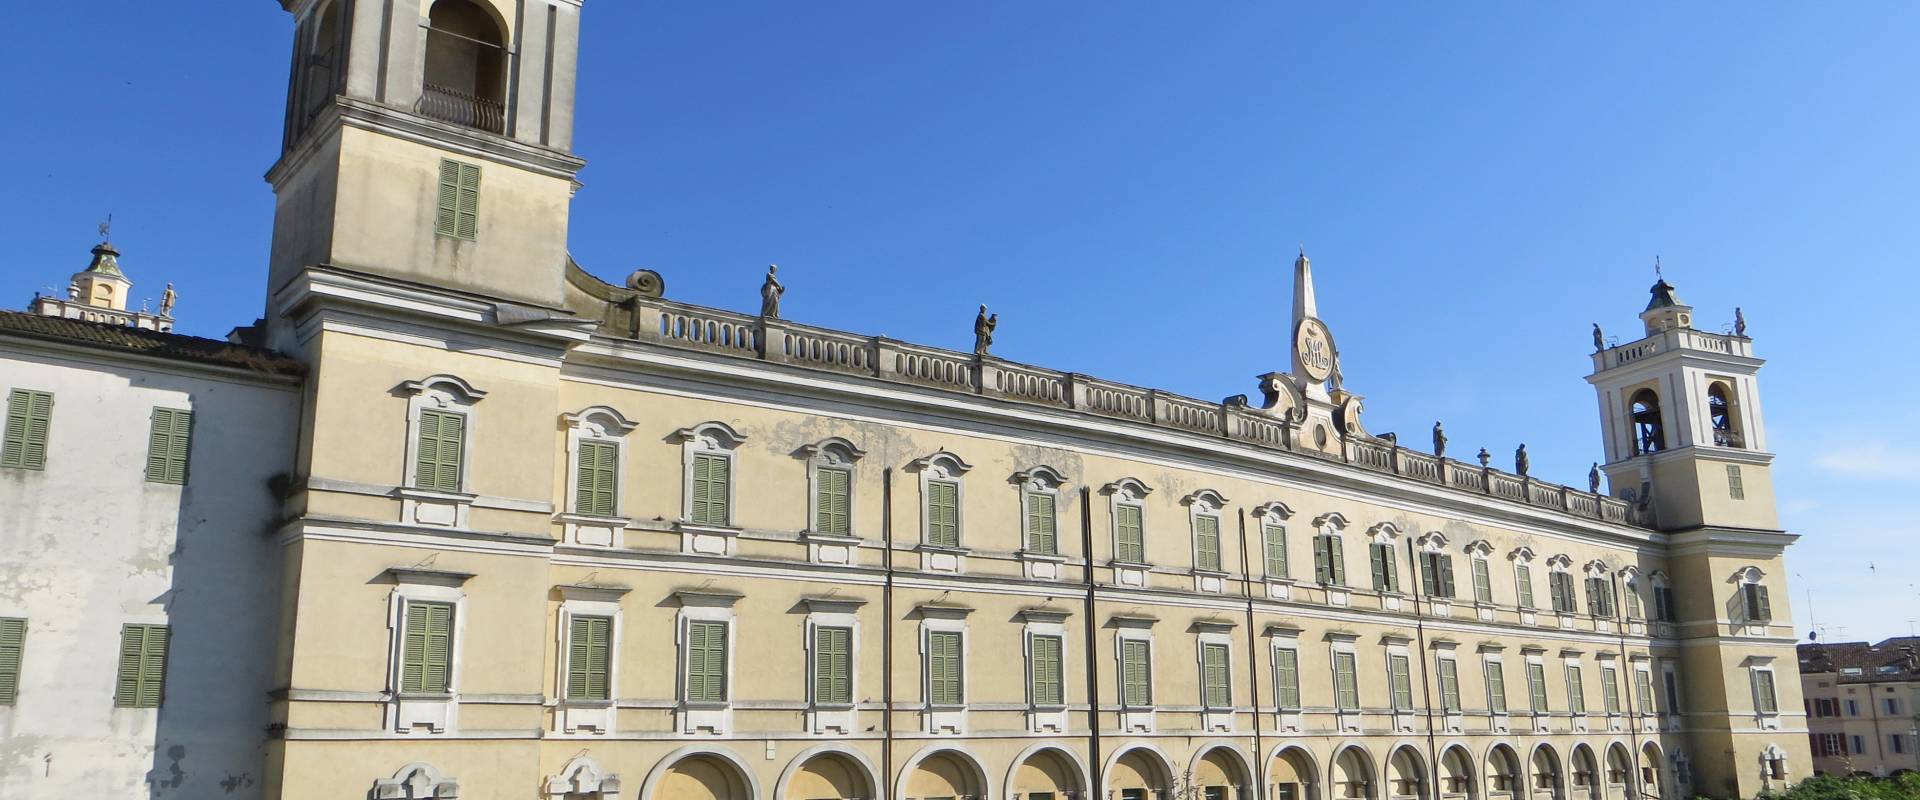 Palazzo Ducale (Colorno) - lato nord-ovest 2 2019-06-20 foto di Parma198